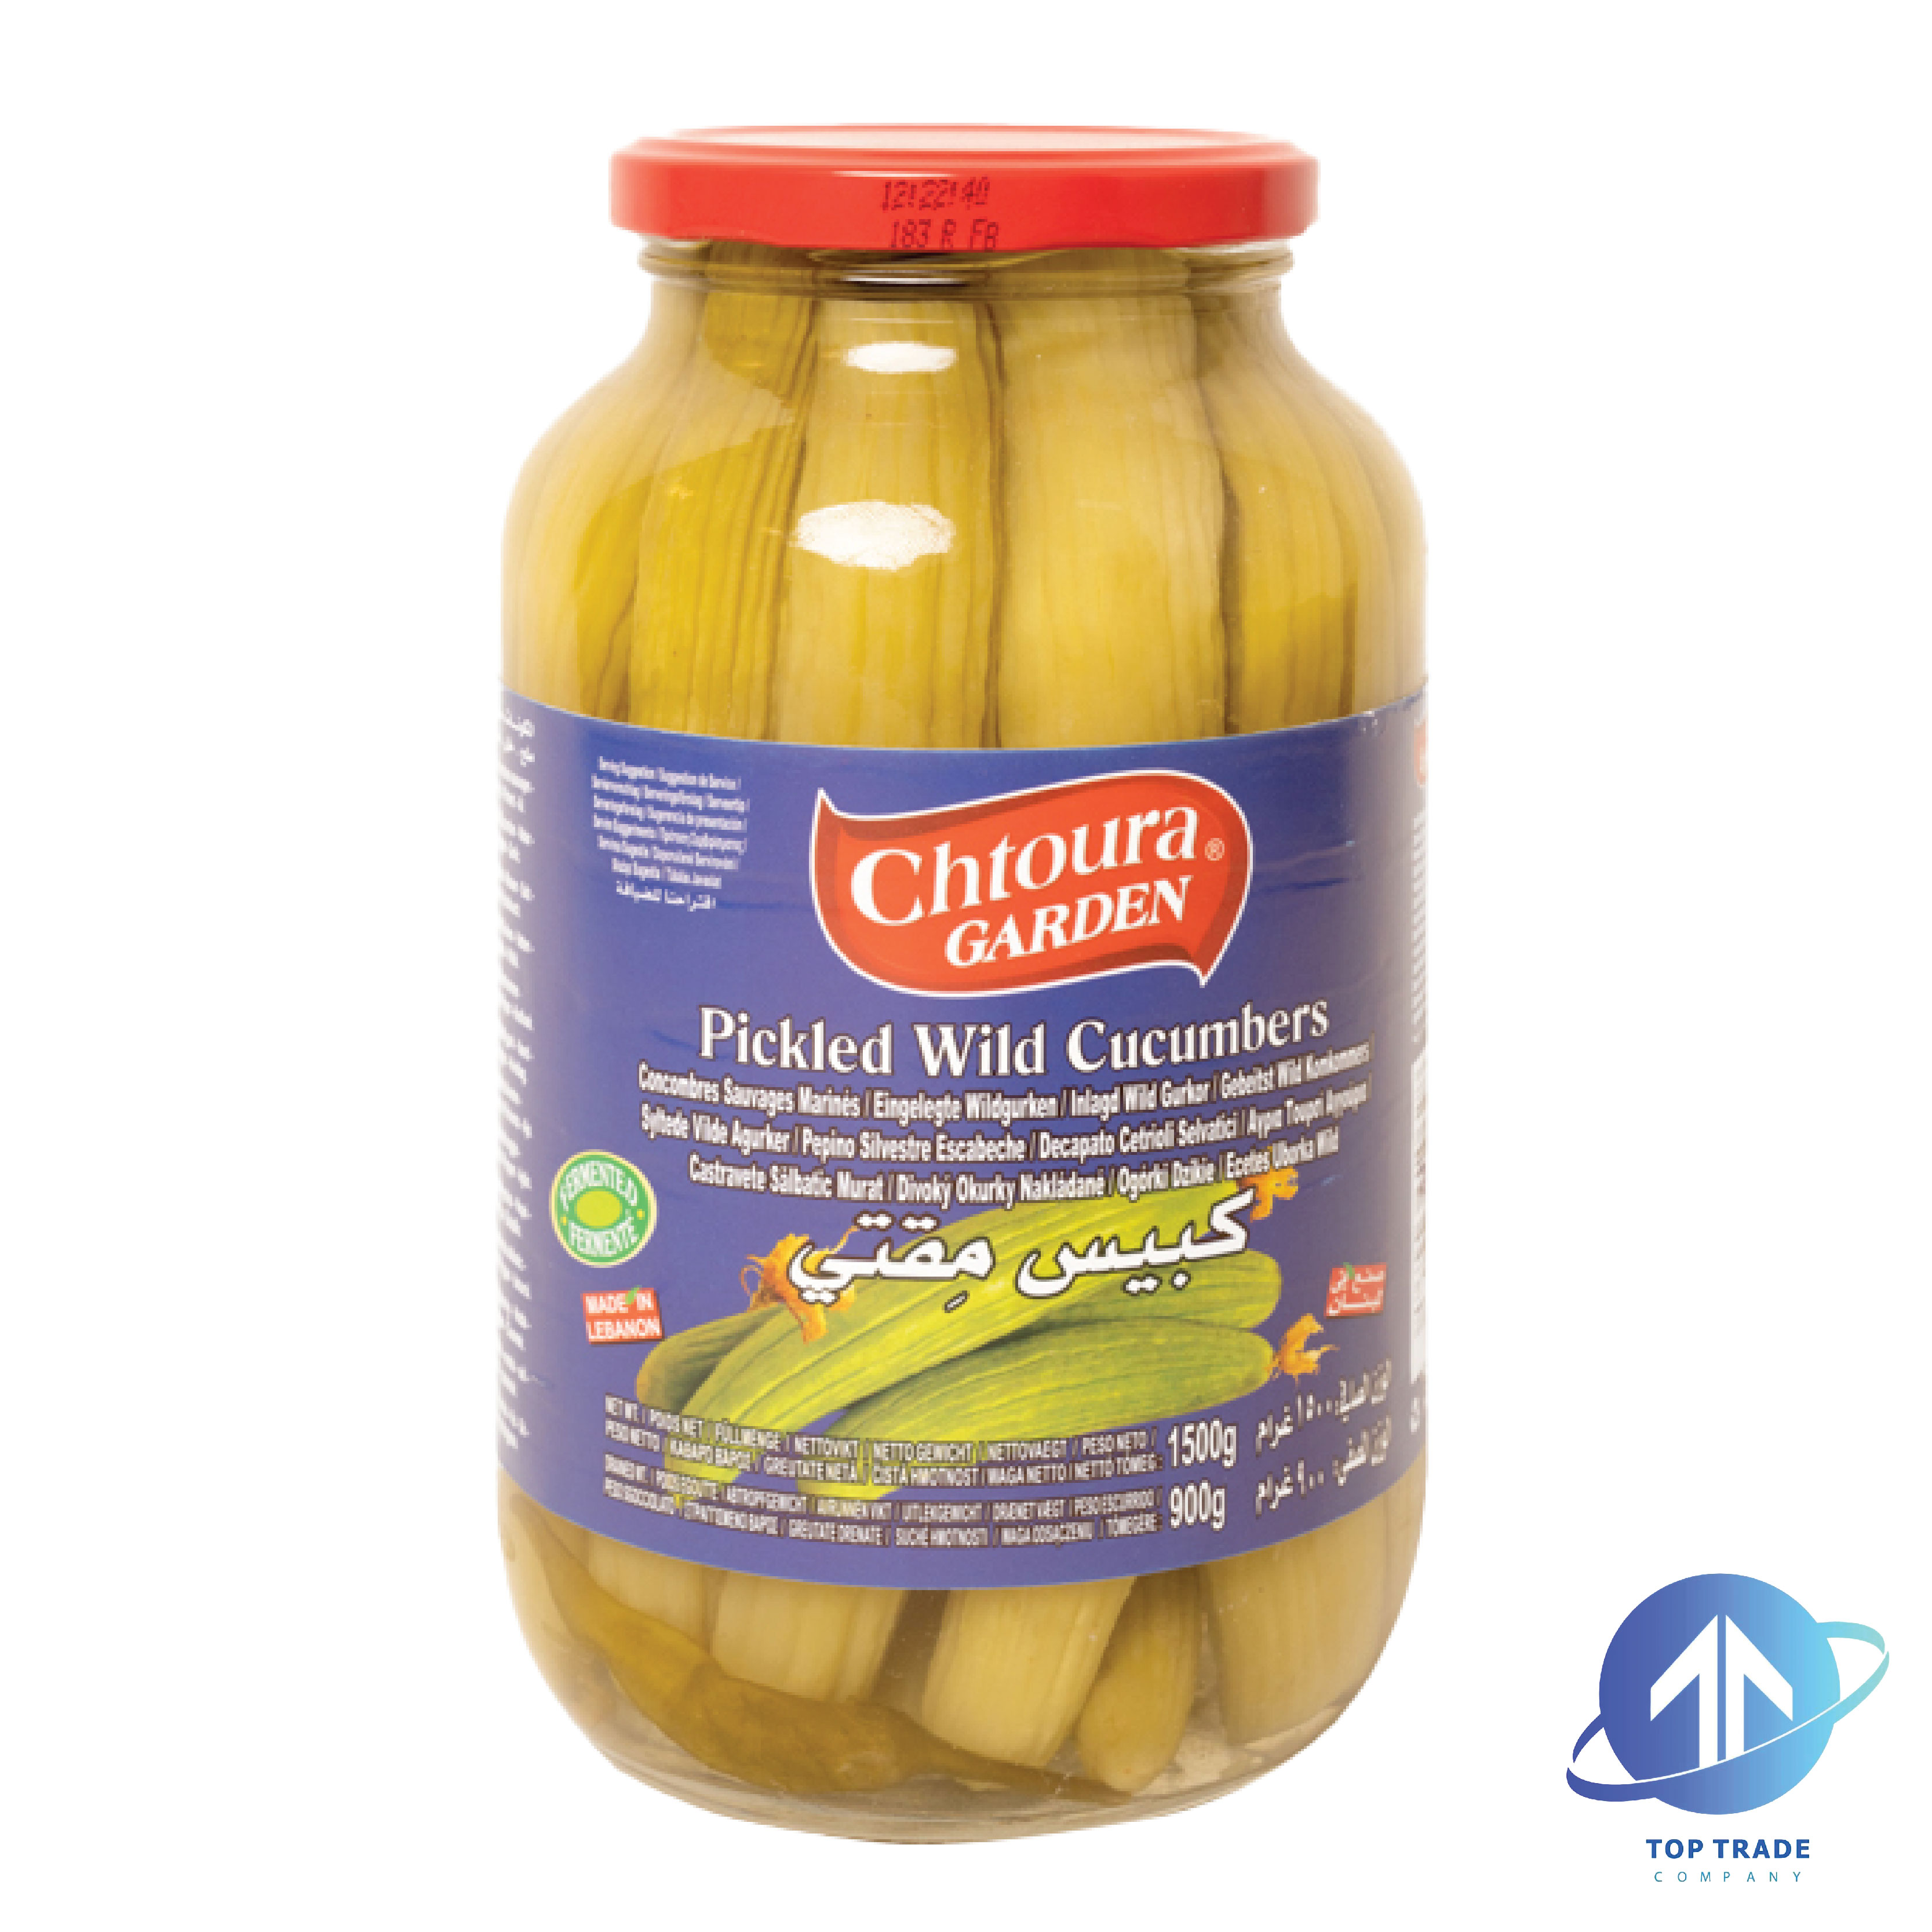 Chtoura garden Wild Cucumber pickles 1500gr